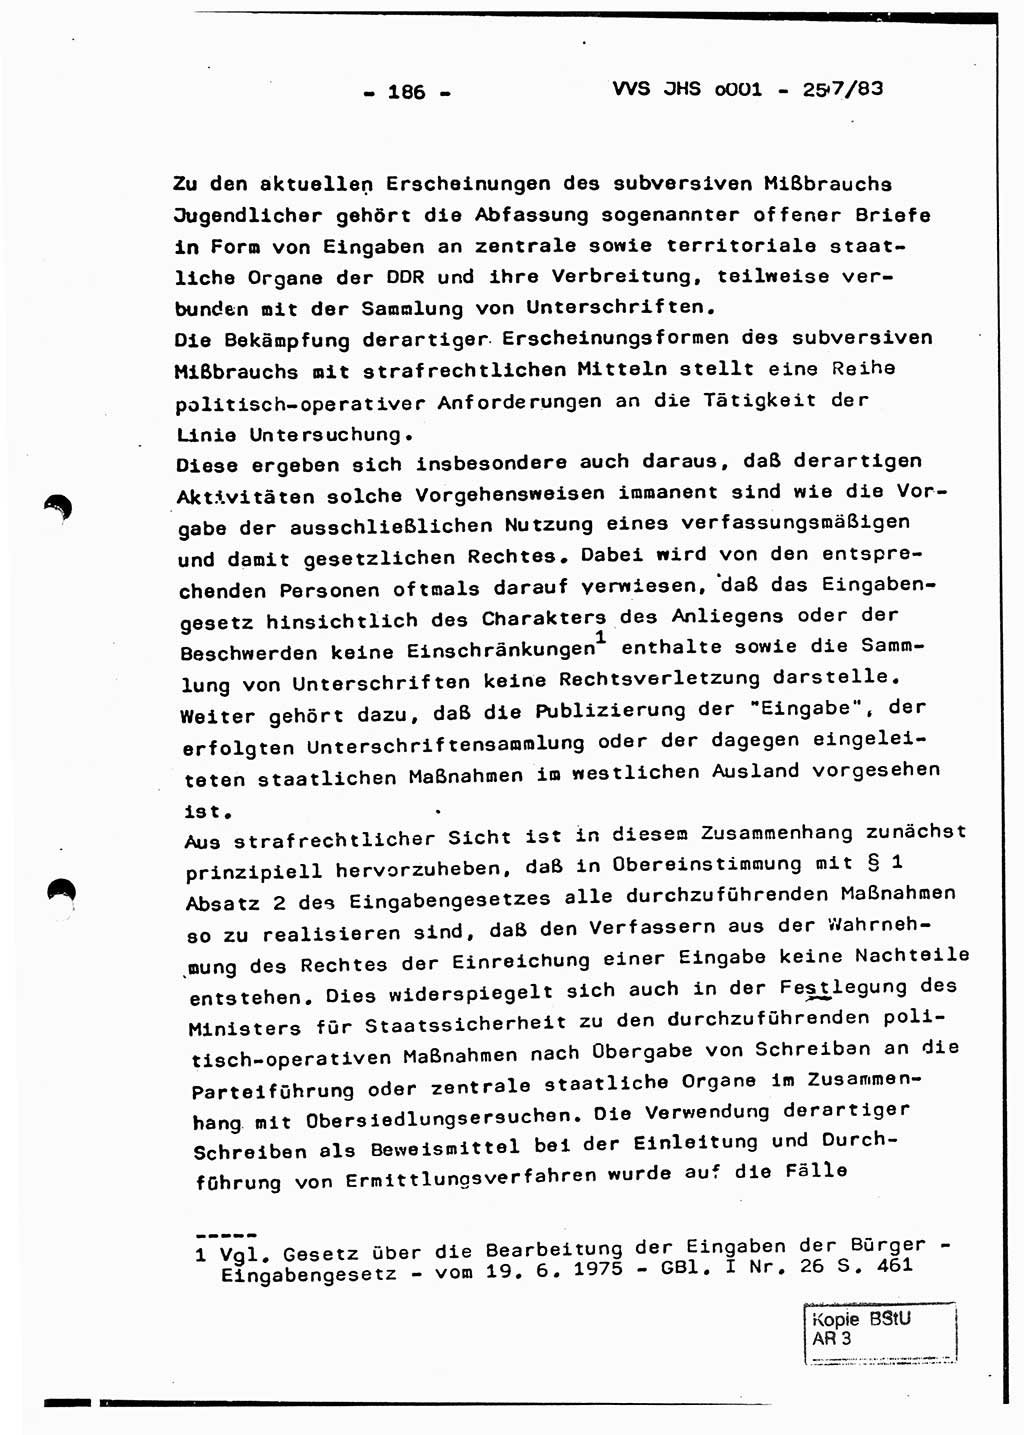 Dissertation, Oberst Helmut Lubas (BV Mdg.), Oberstleutnant Manfred Eschberger (HA IX), Oberleutnant Hans-Jürgen Ludwig (JHS), Ministerium für Staatssicherheit (MfS) [Deutsche Demokratische Republik (DDR)], Juristische Hochschule (JHS), Vertrauliche Verschlußsache (VVS) o001-257/83, Potsdam 1983, Seite 186 (Diss. MfS DDR JHS VVS o001-257/83 1983, S. 186)